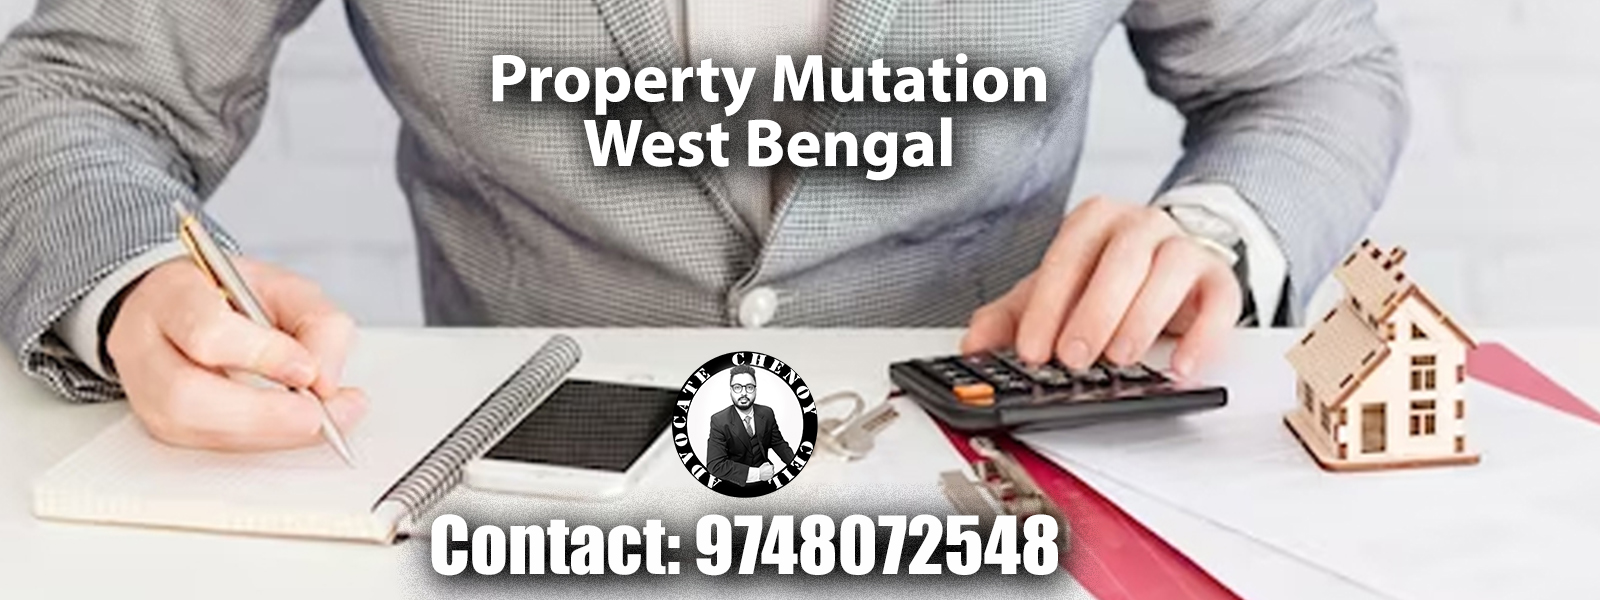 Property Mutation Kolkata